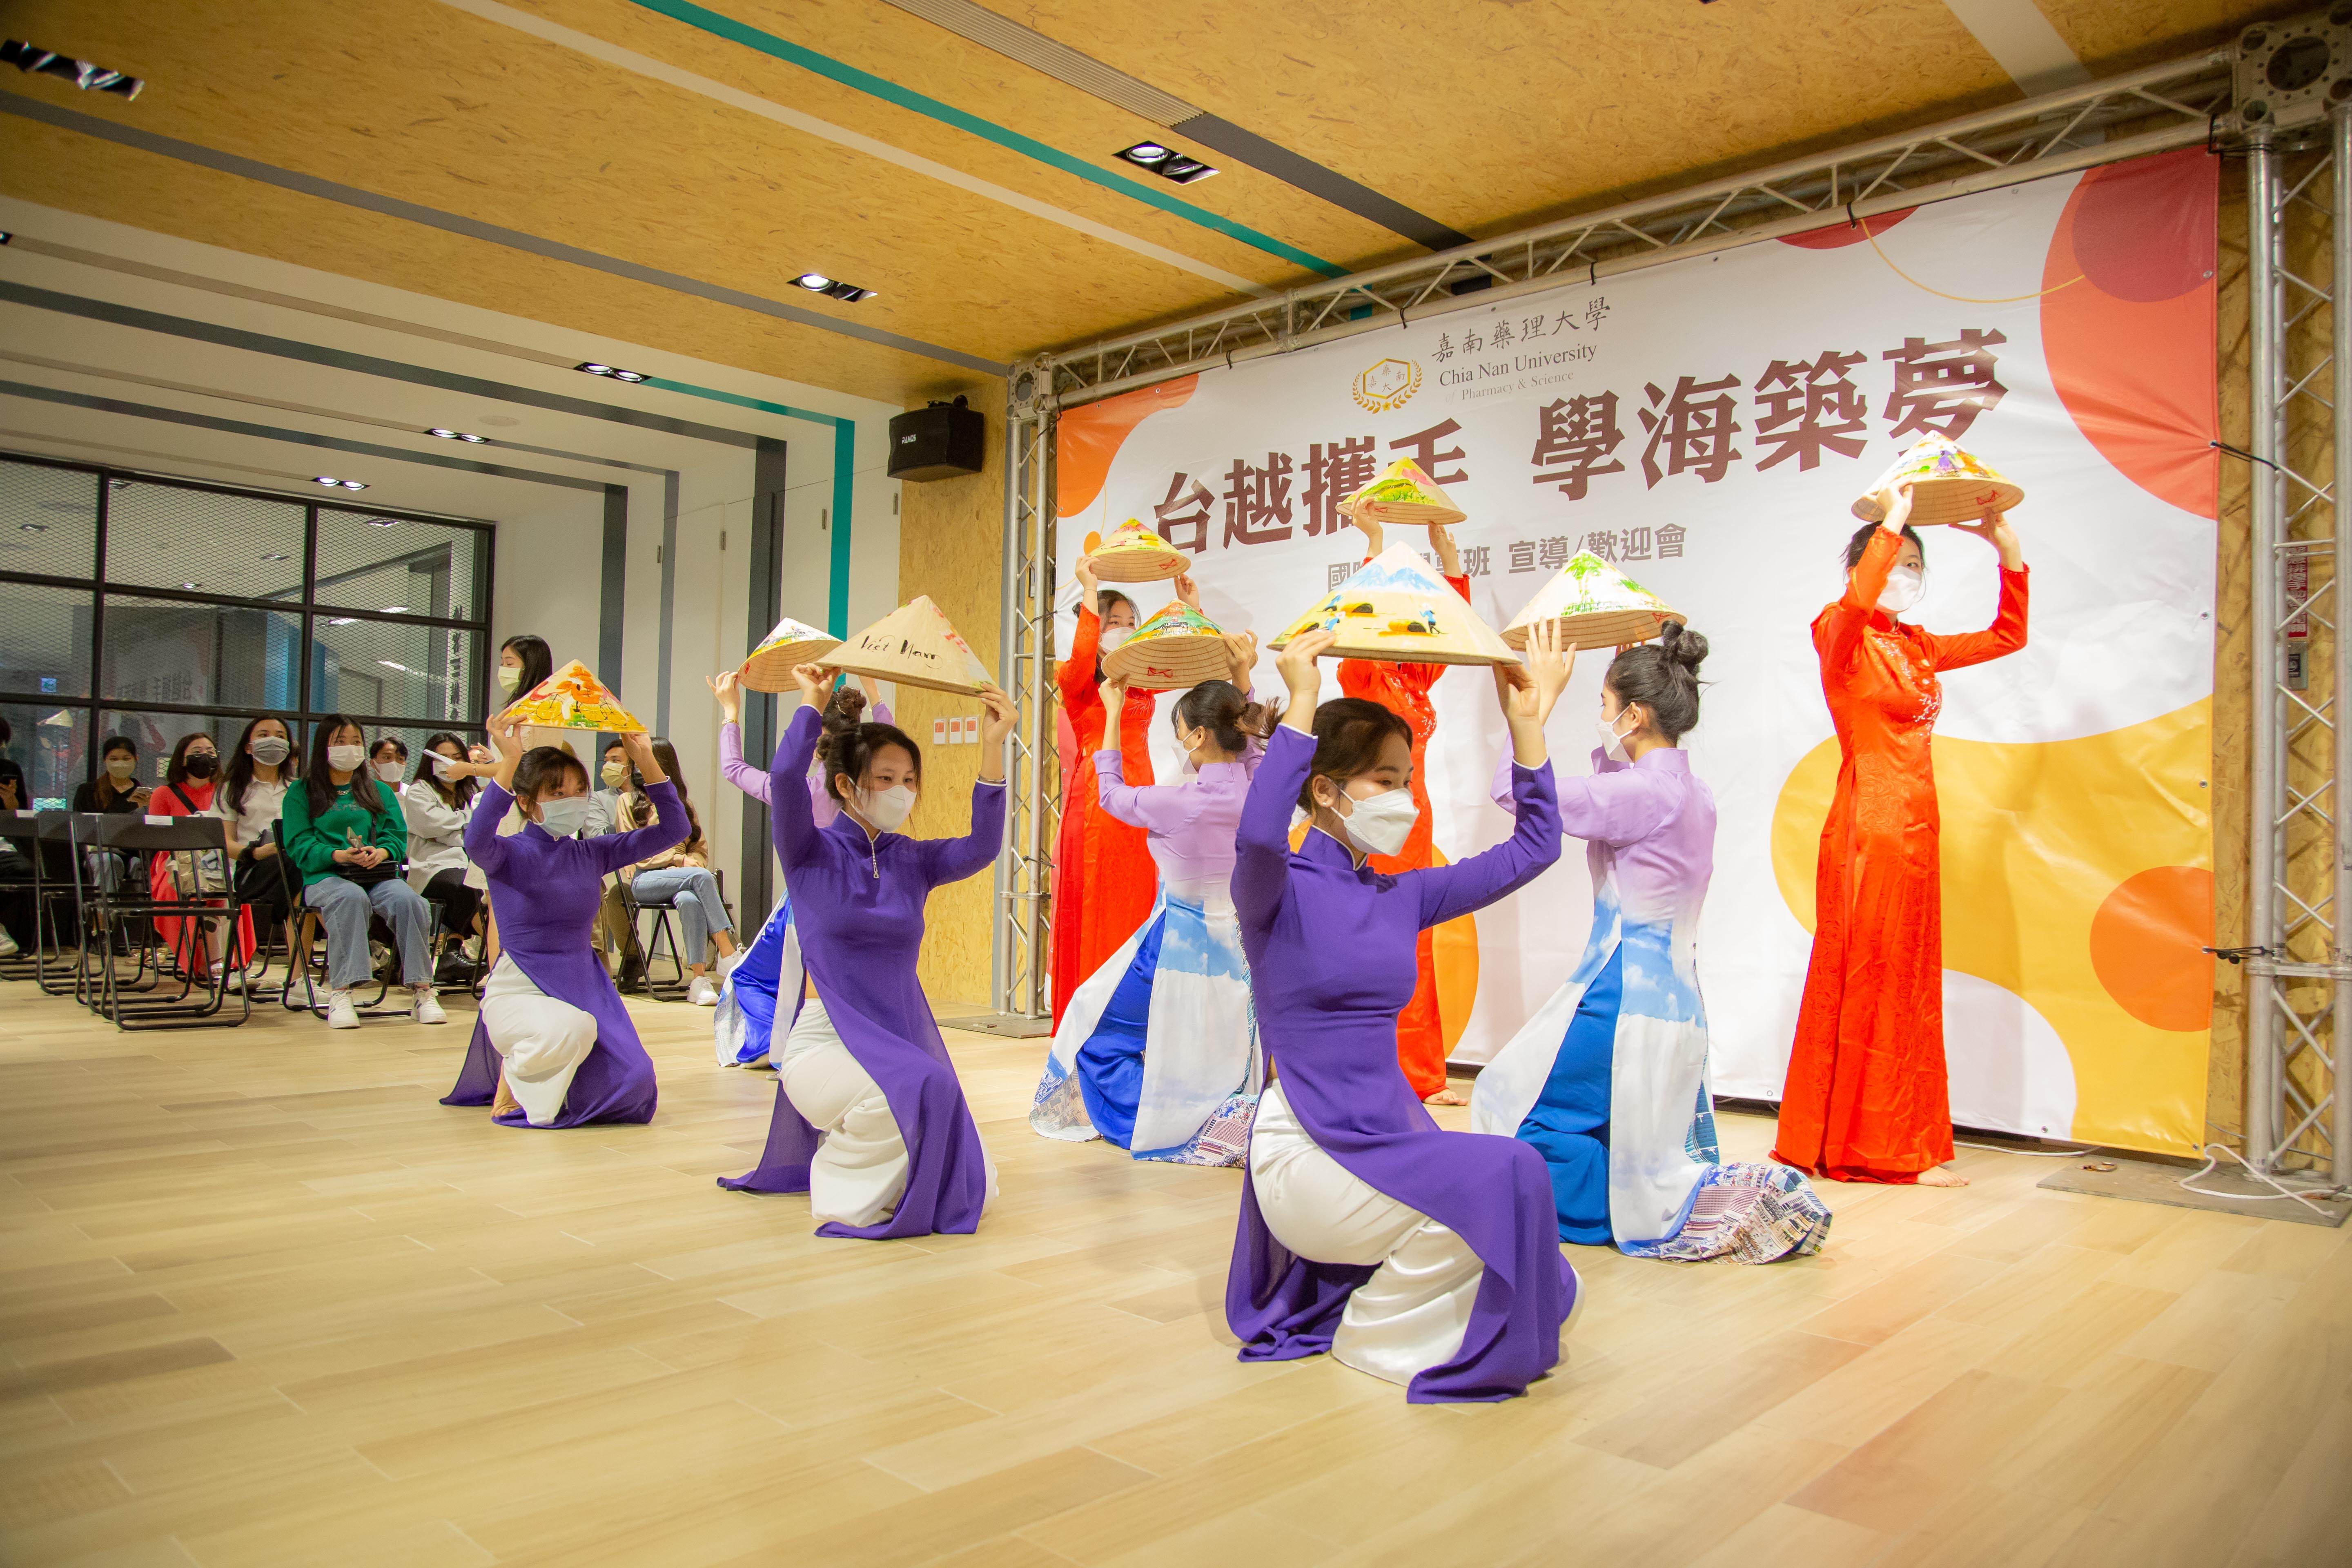 嘉藥越南學生精心準備的越南傳統舞蹈表演